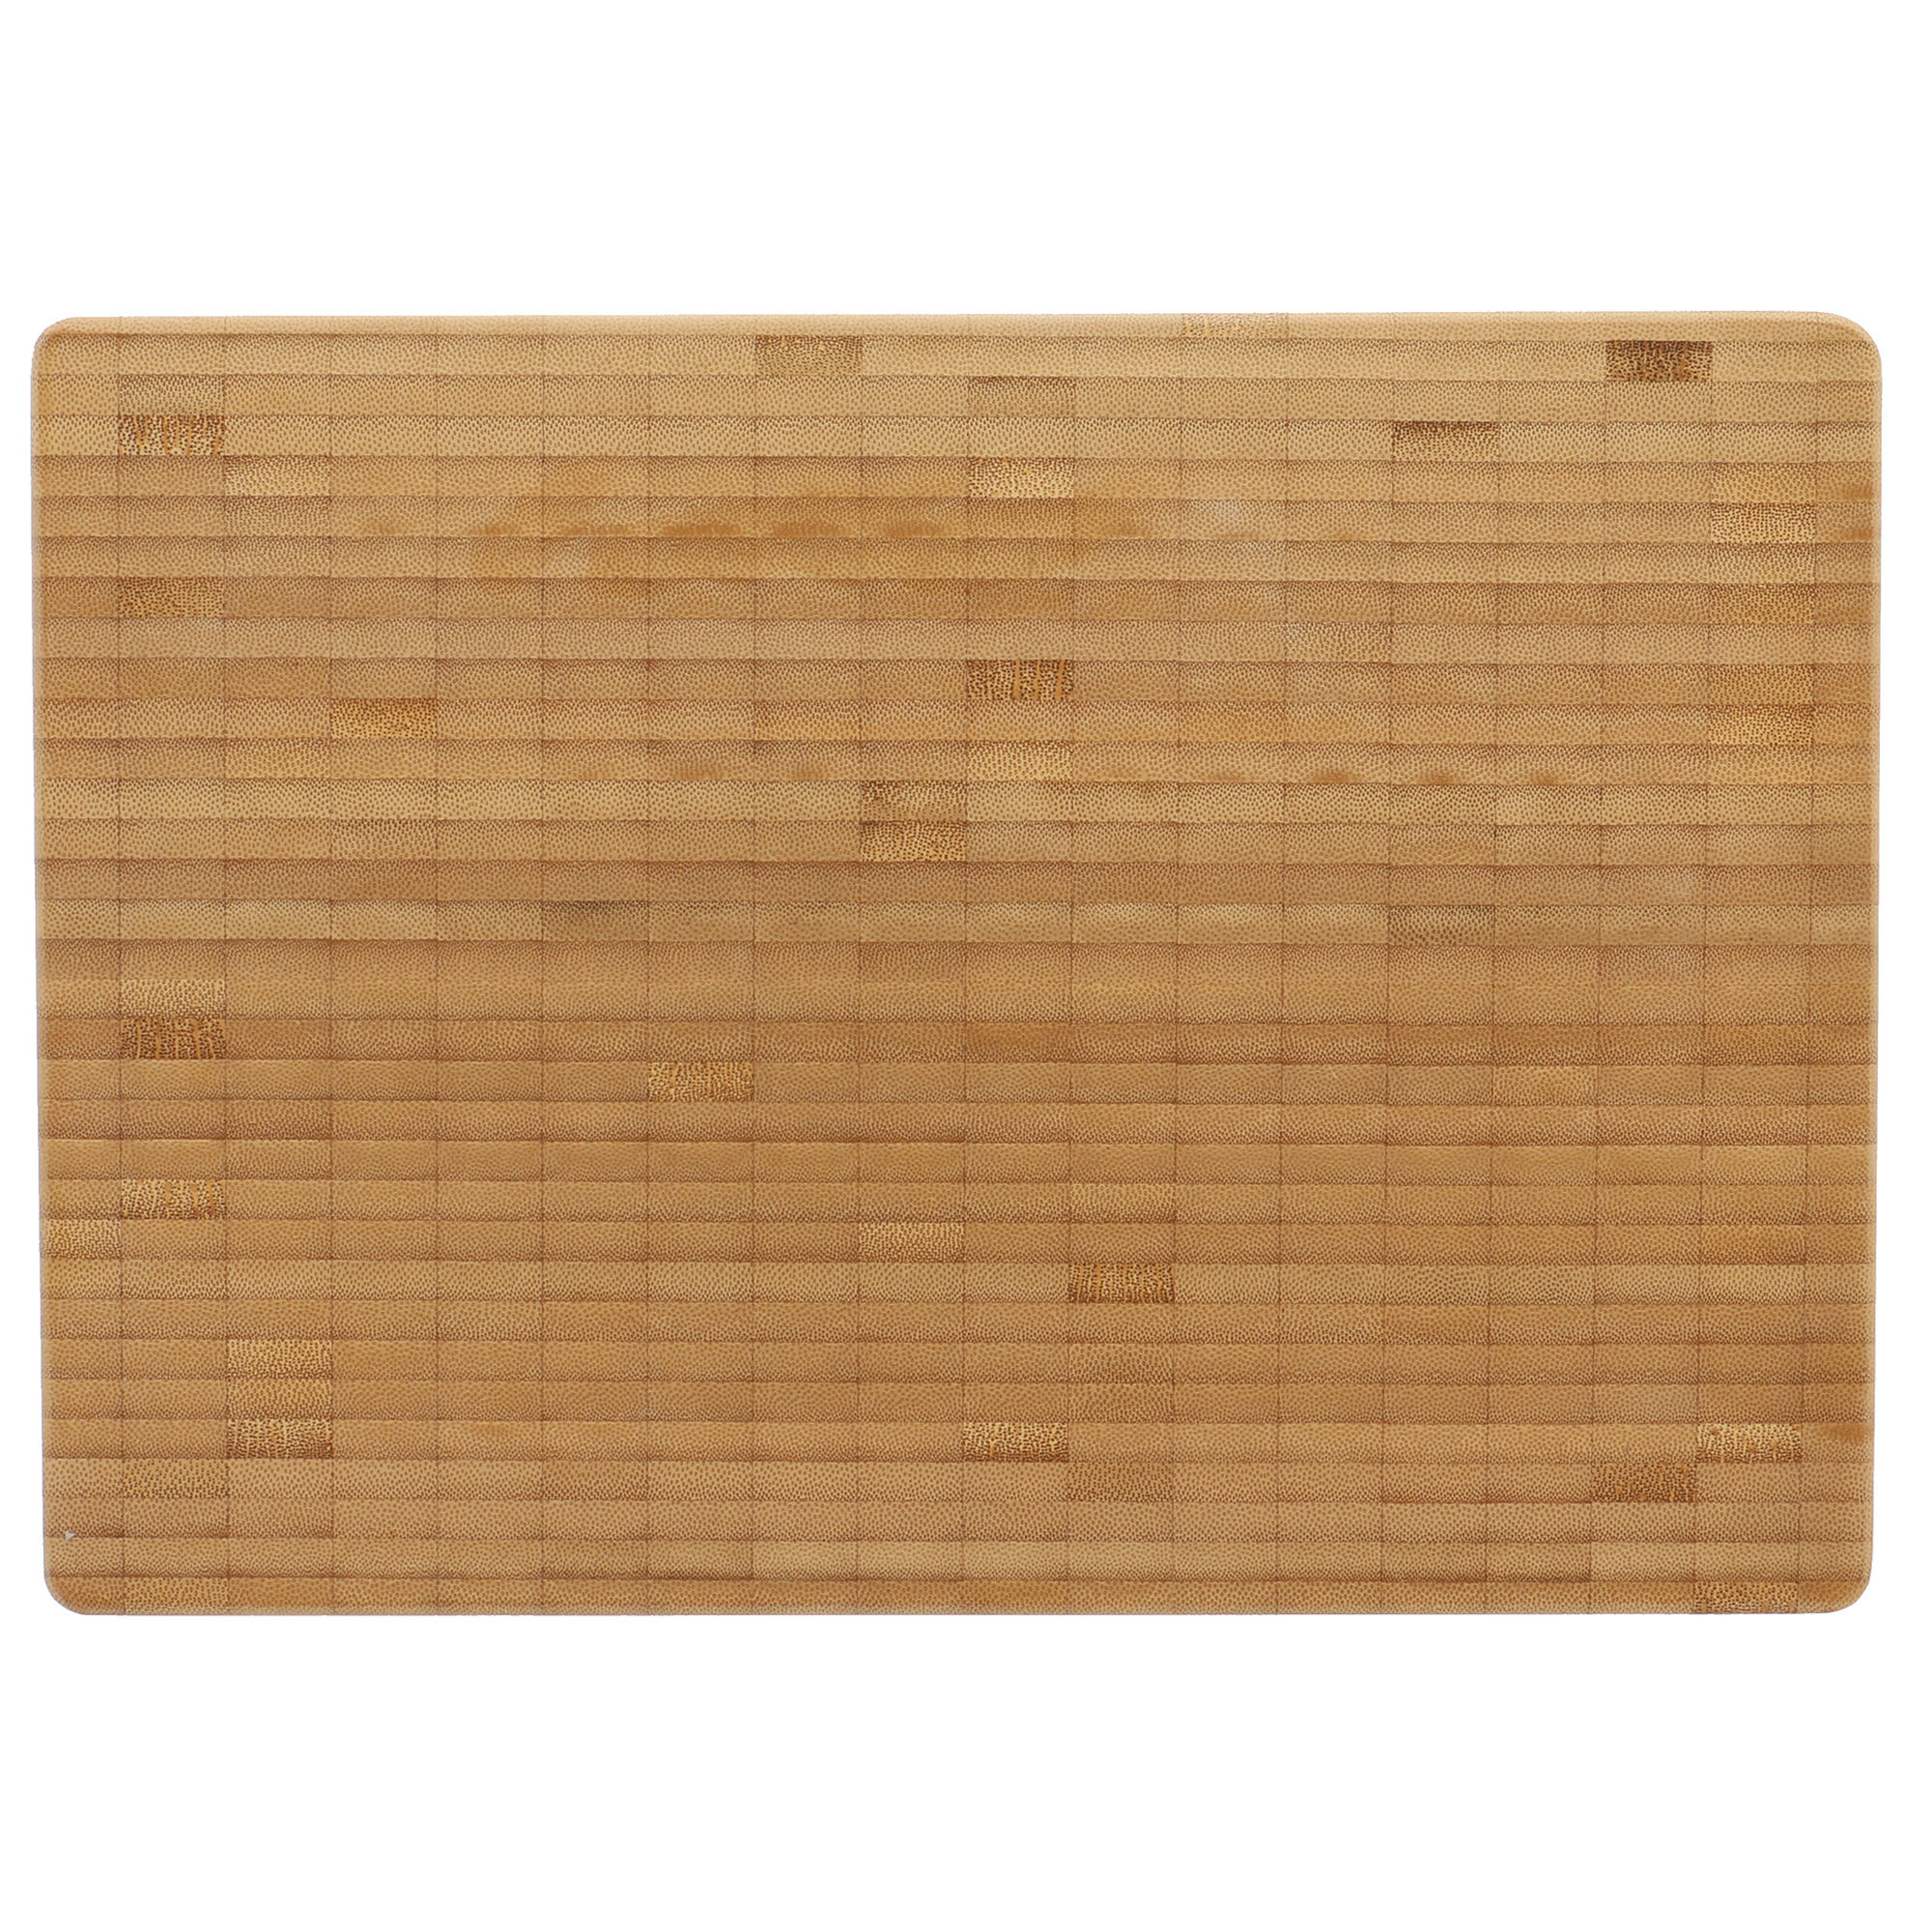 ZWILLING Cutting board 25.5 x 36 cm